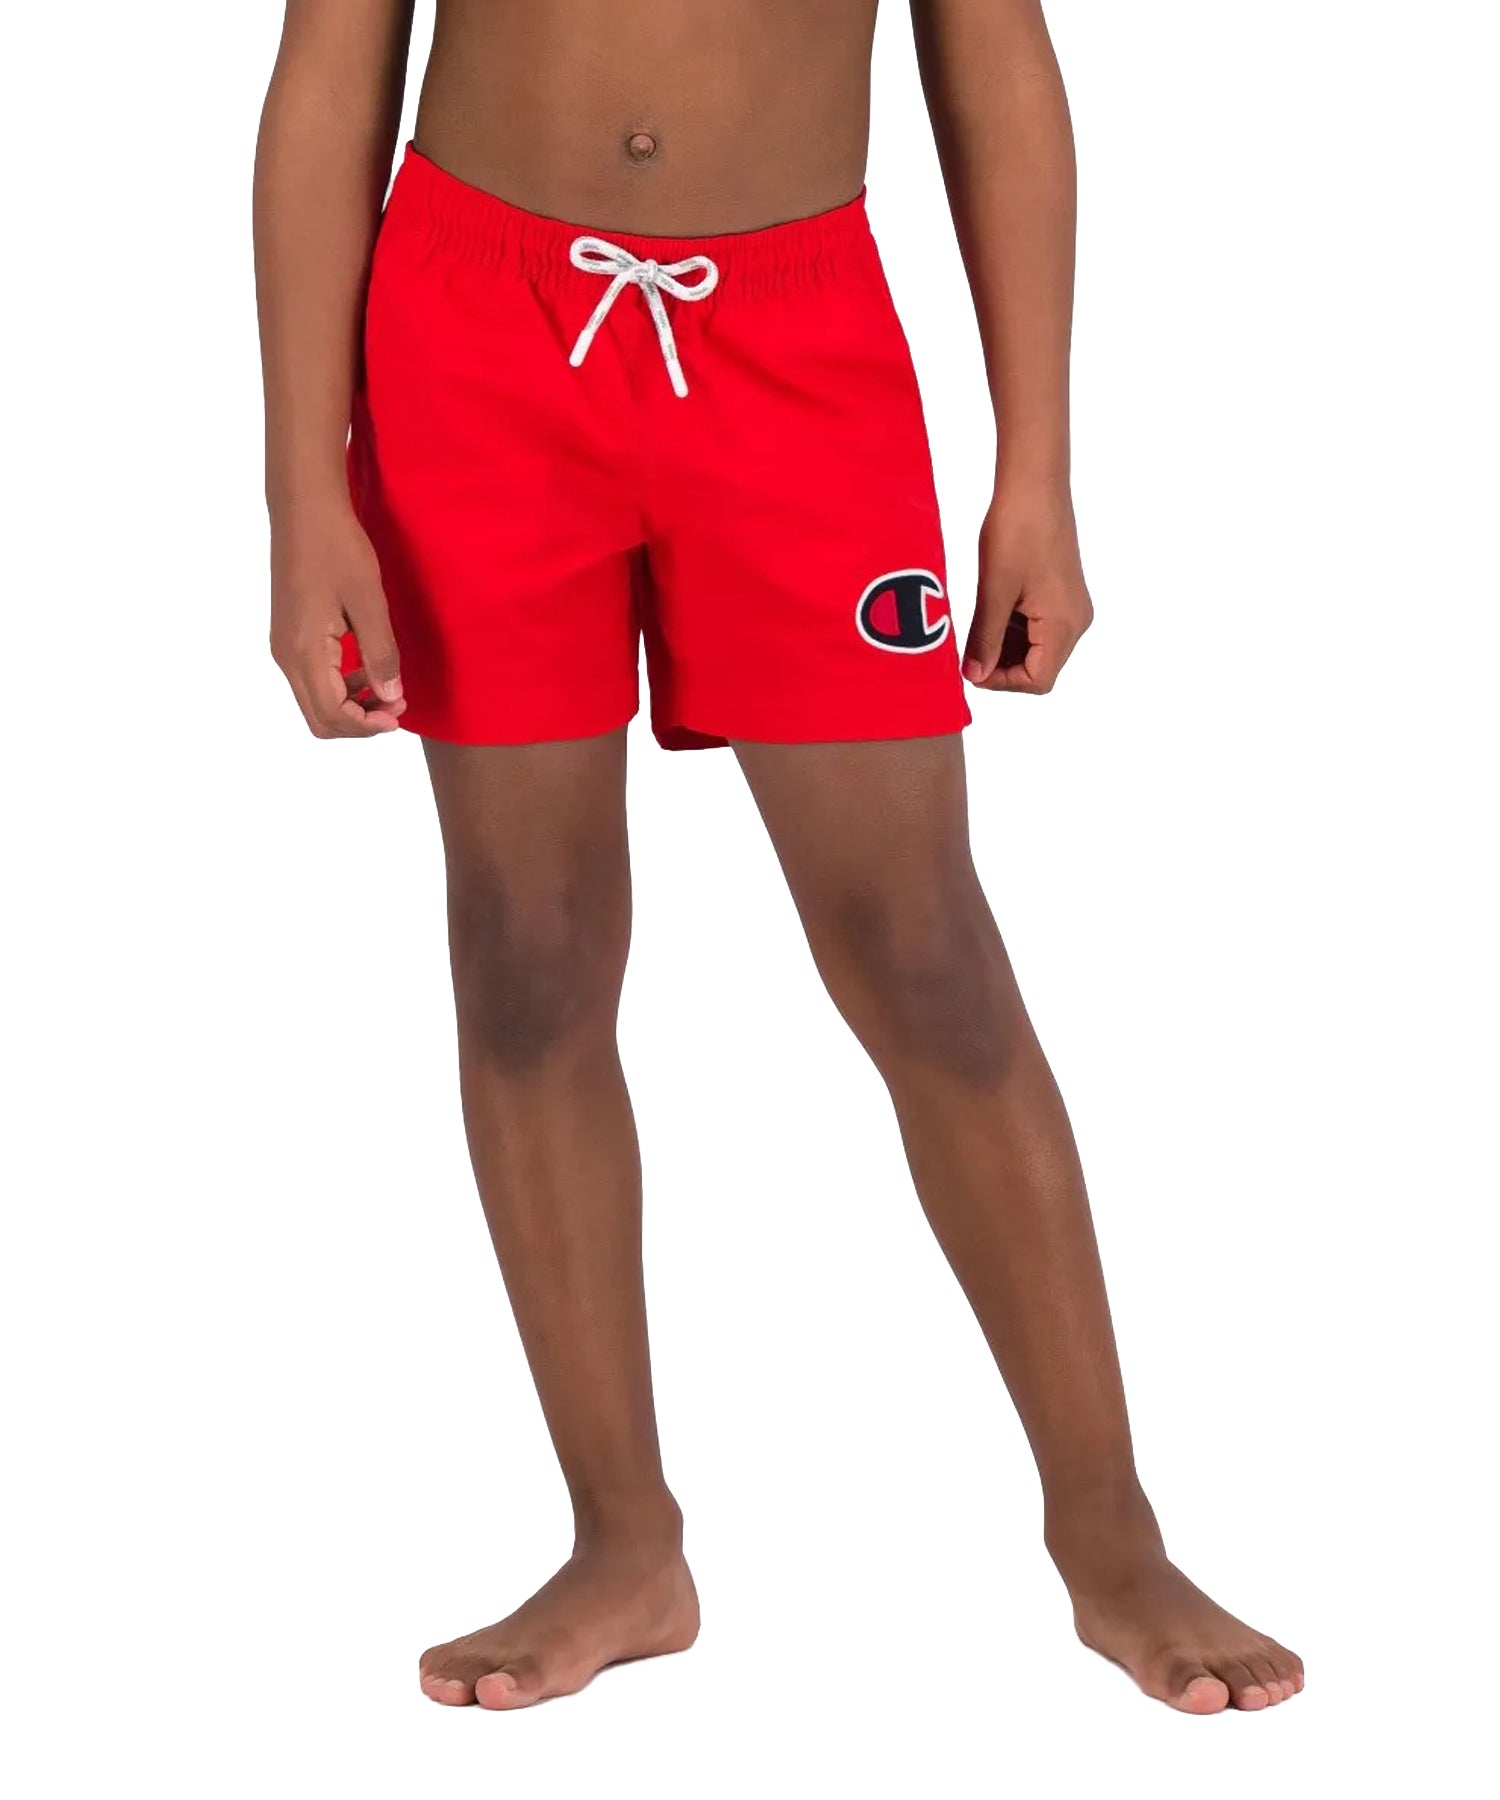 Bañador para niños Champion de color rojo con logo Champion en la pierna.